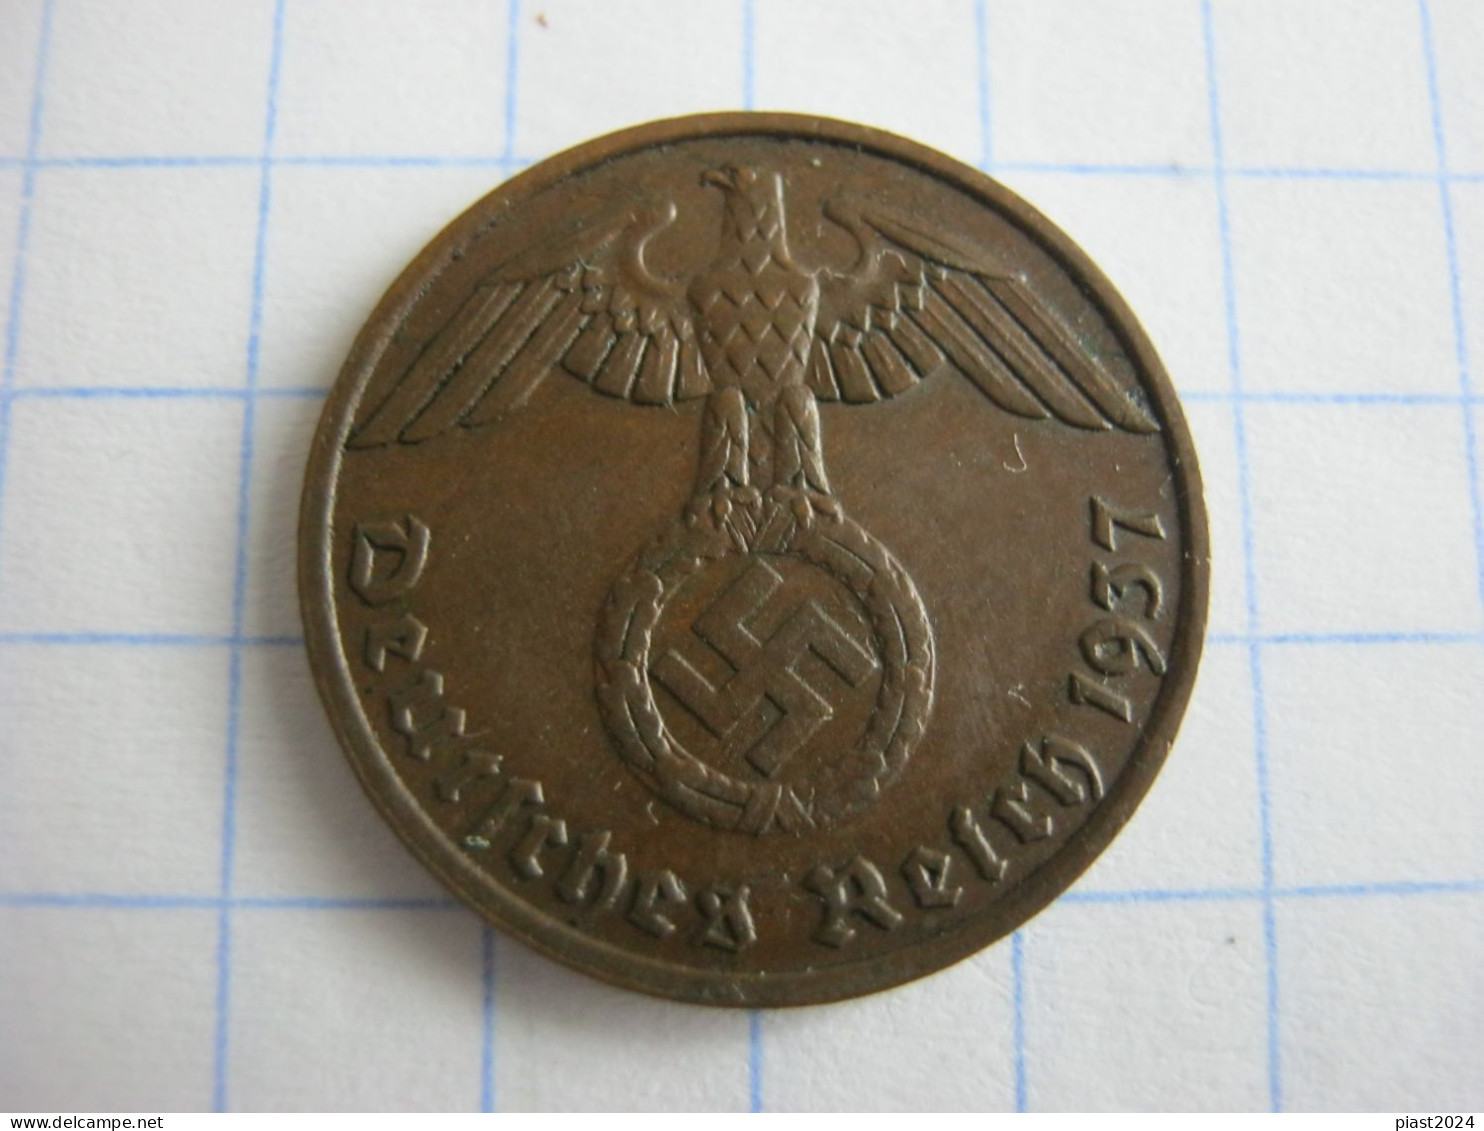 Germany 1 Reichspfennig 1937 F - 1 Reichspfennig